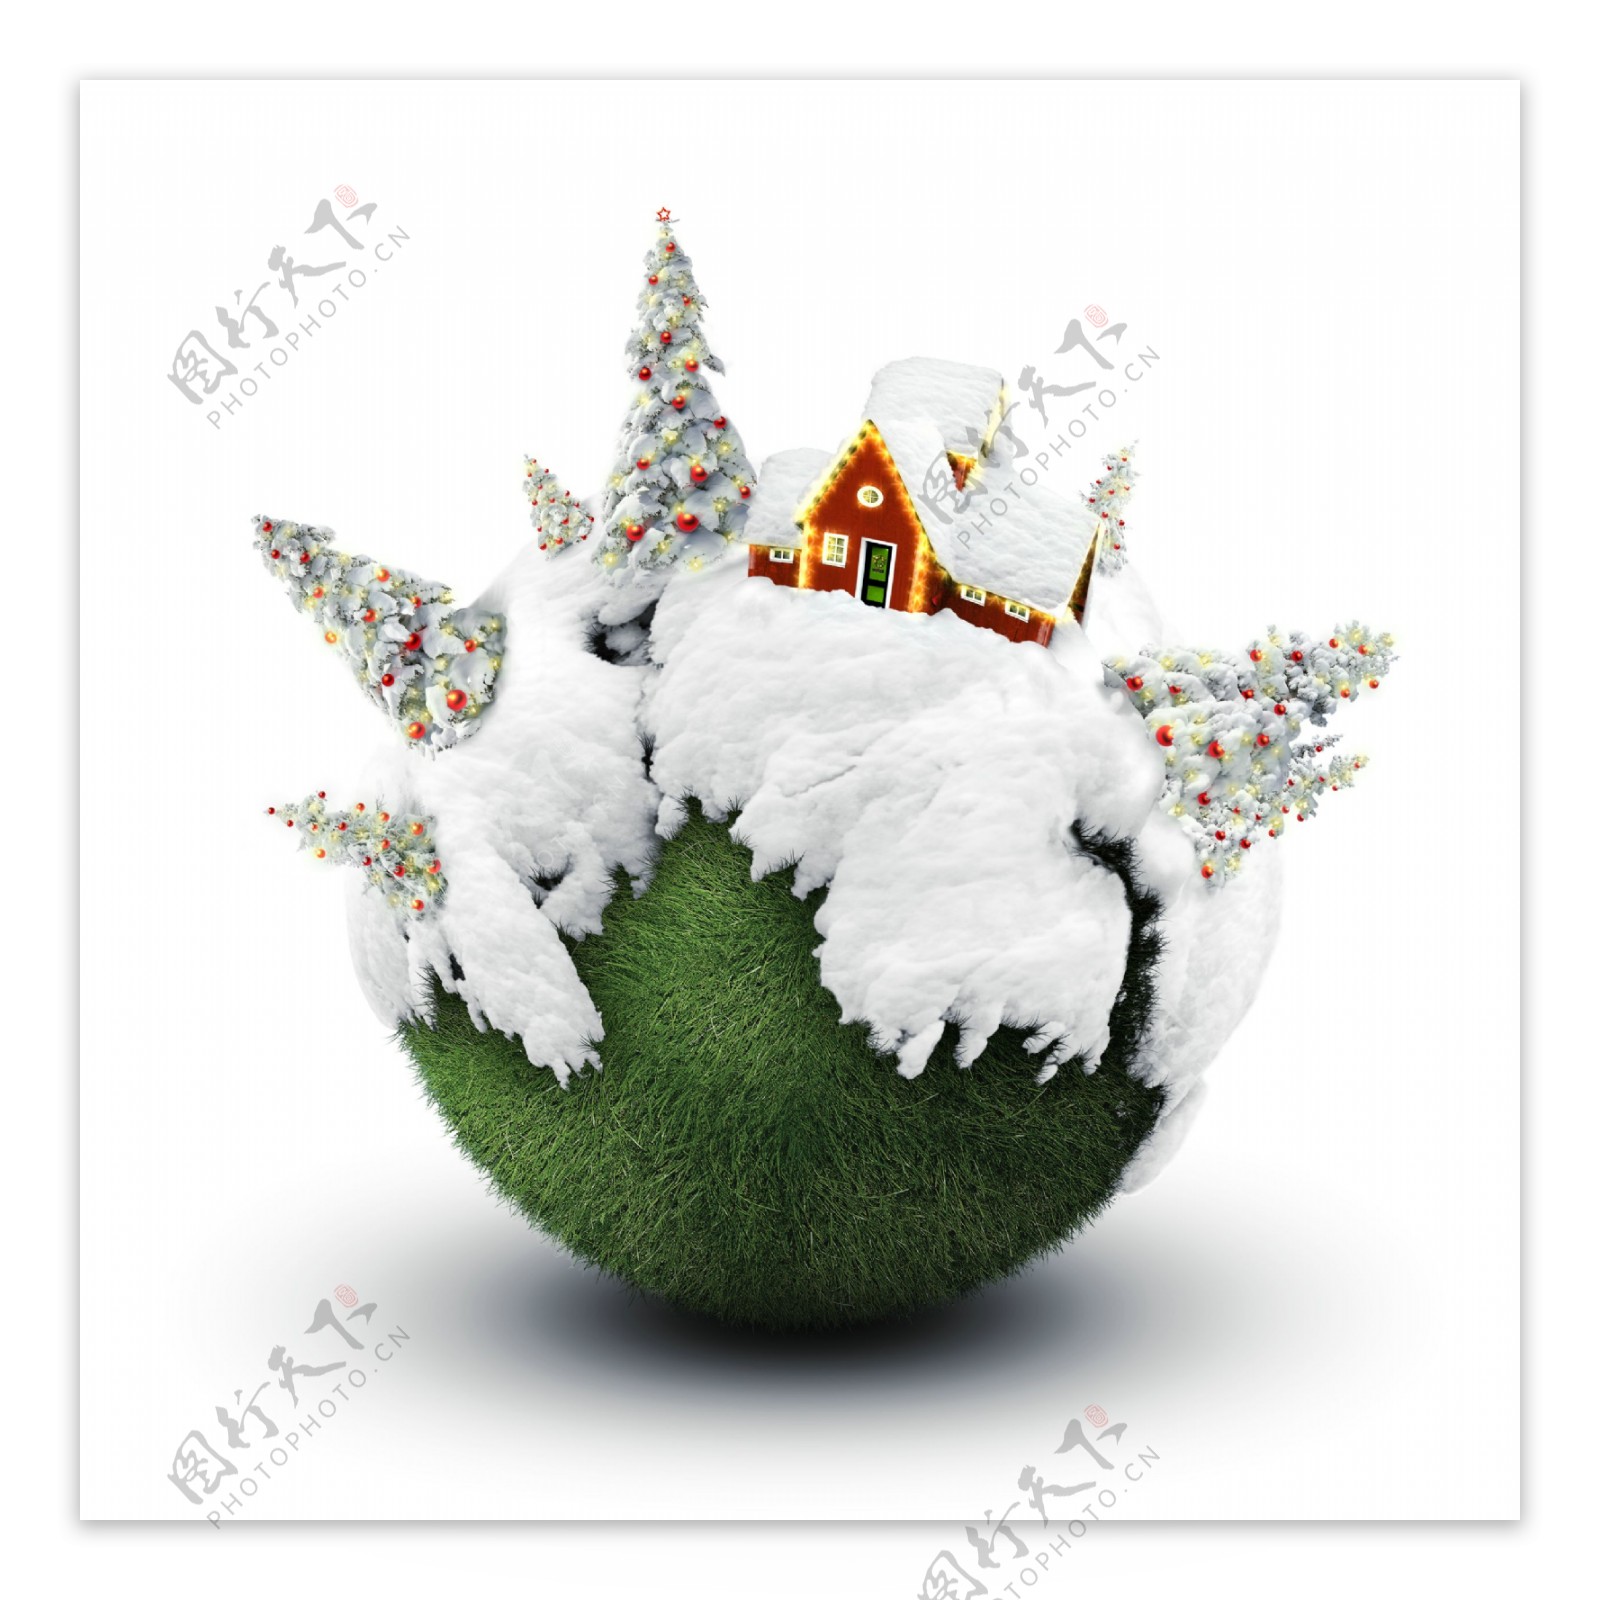 圣诞雪球上的圣诞树童话世界童话小屋图片